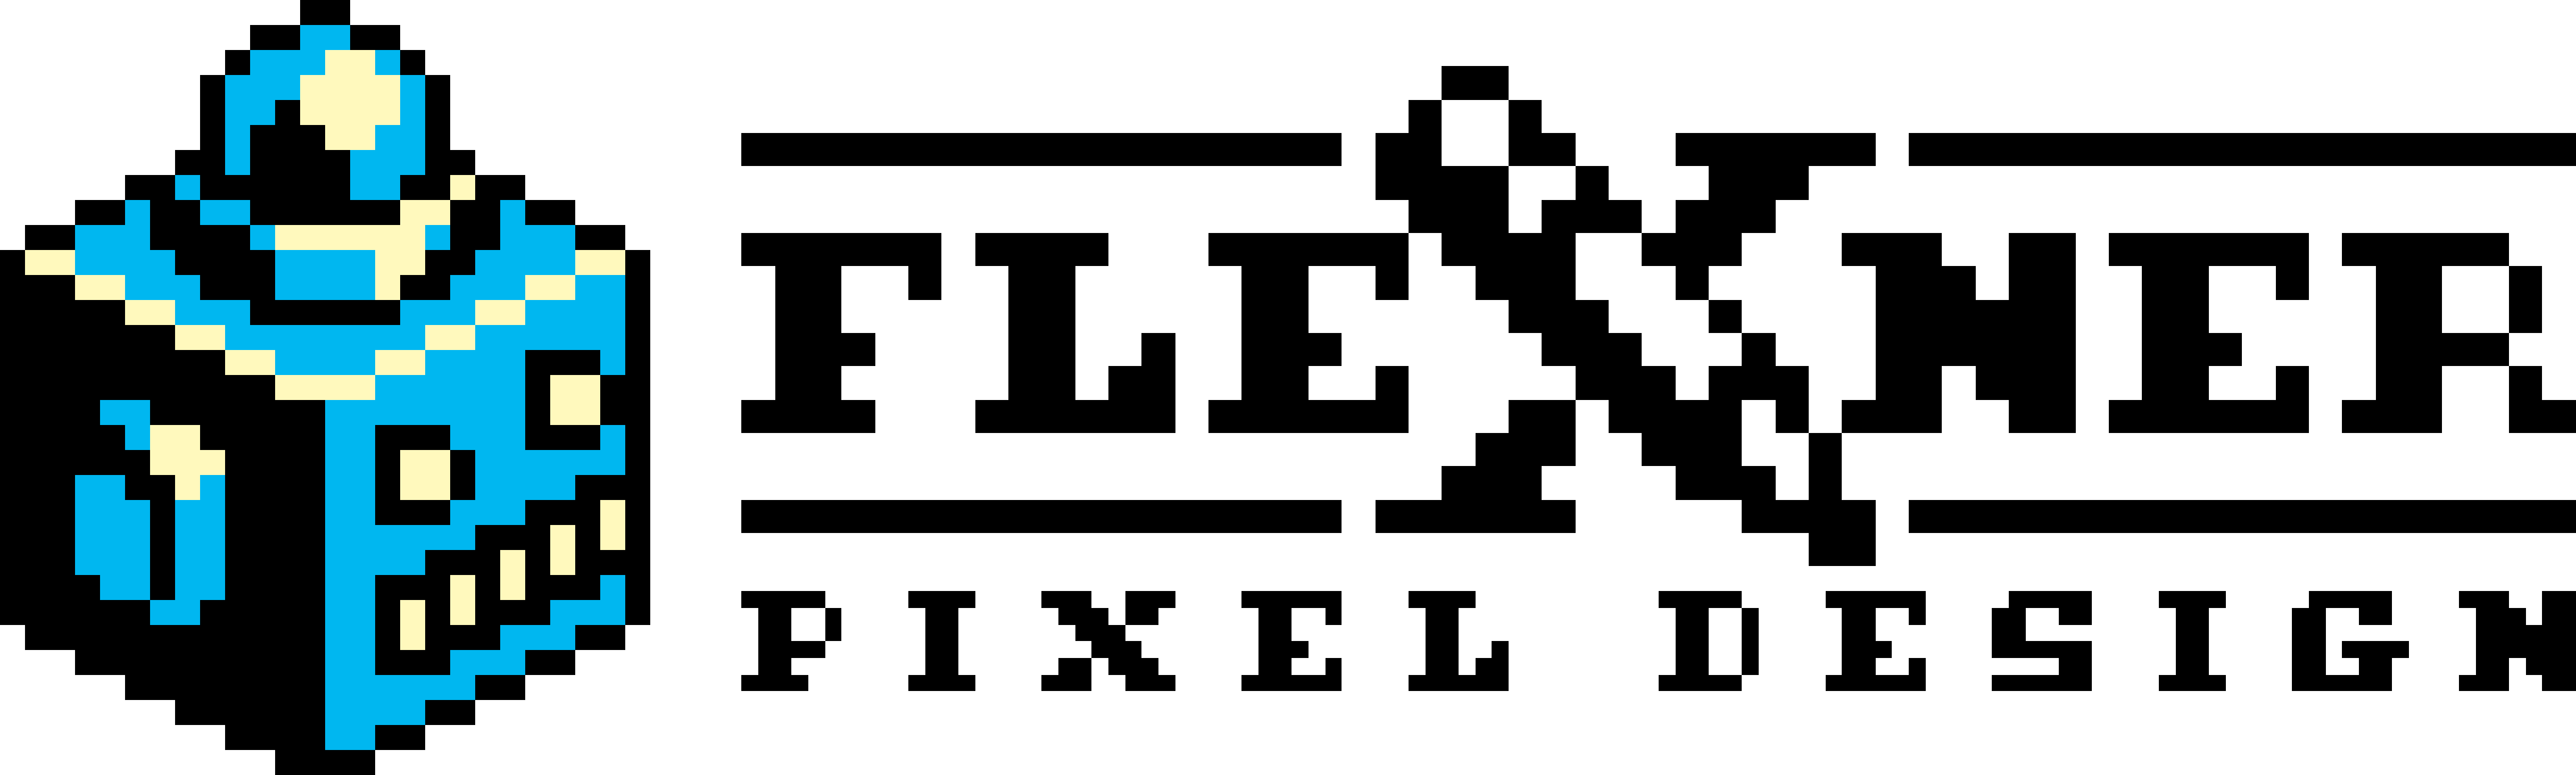 Flexner Pixel Design